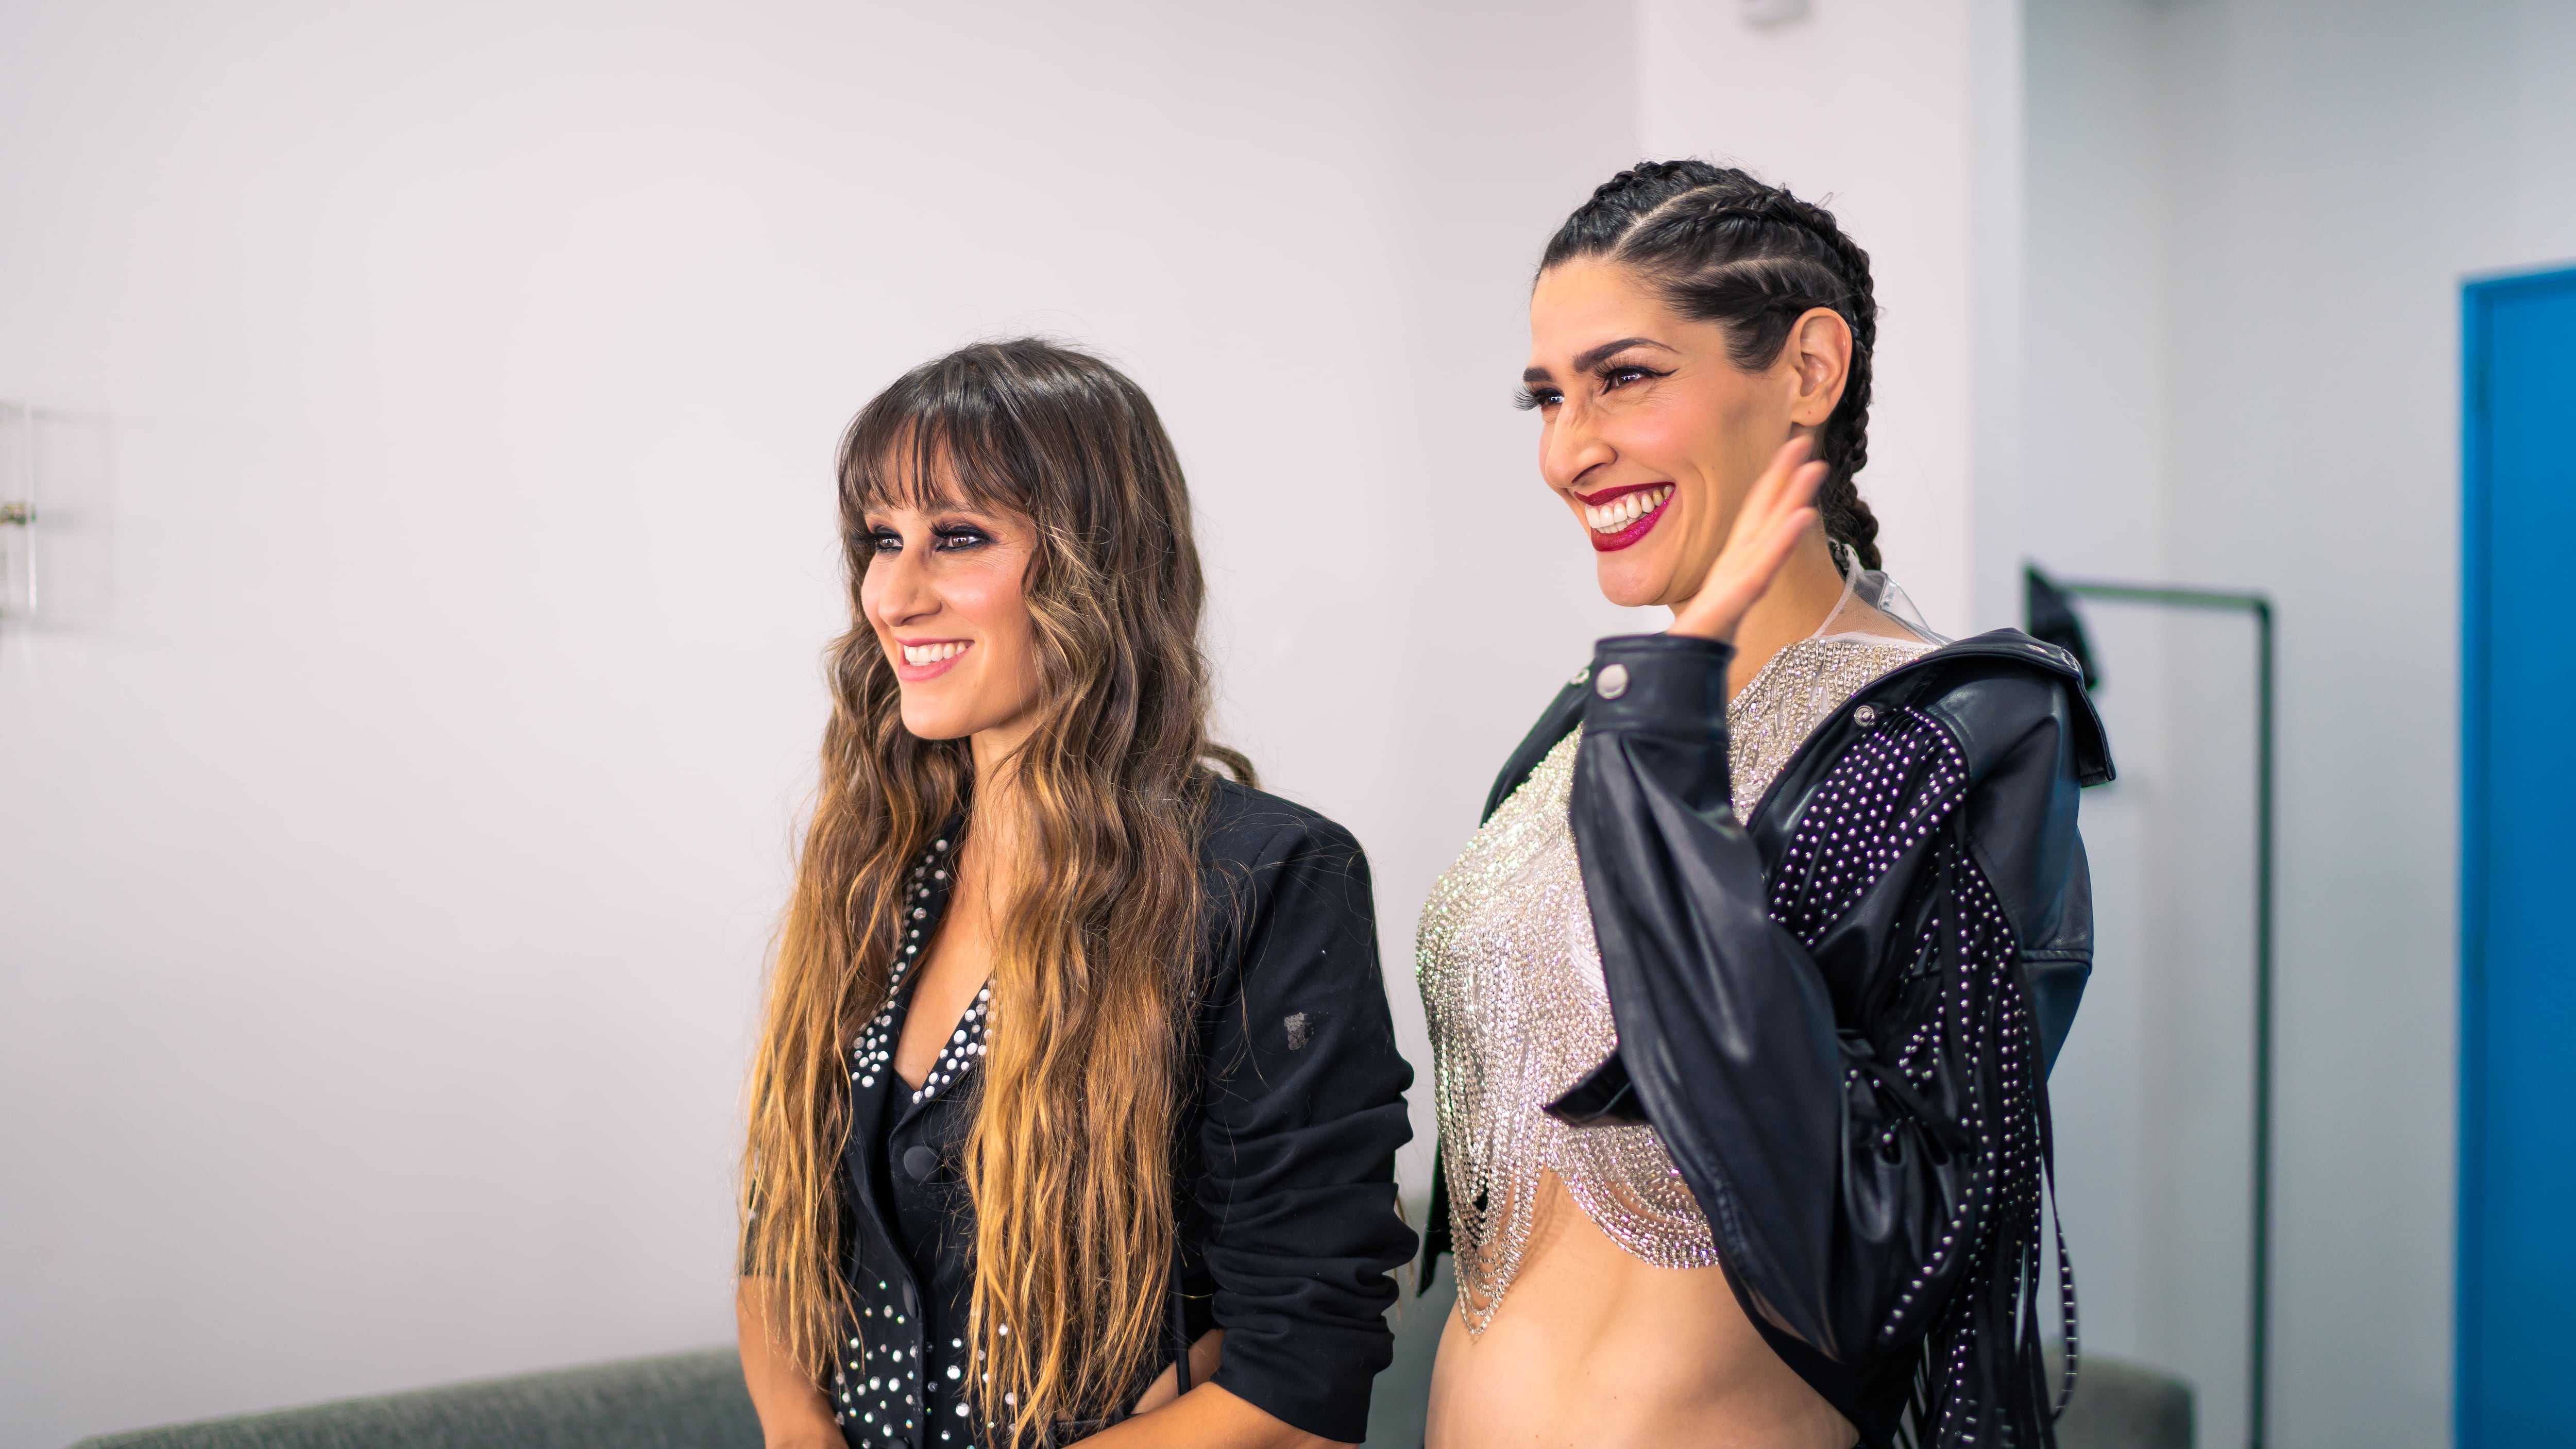 Publimetro acompañó a Ashley y Hanna durante sus conciertos en Guadalajara, y compartieron cada momento en el backstage.